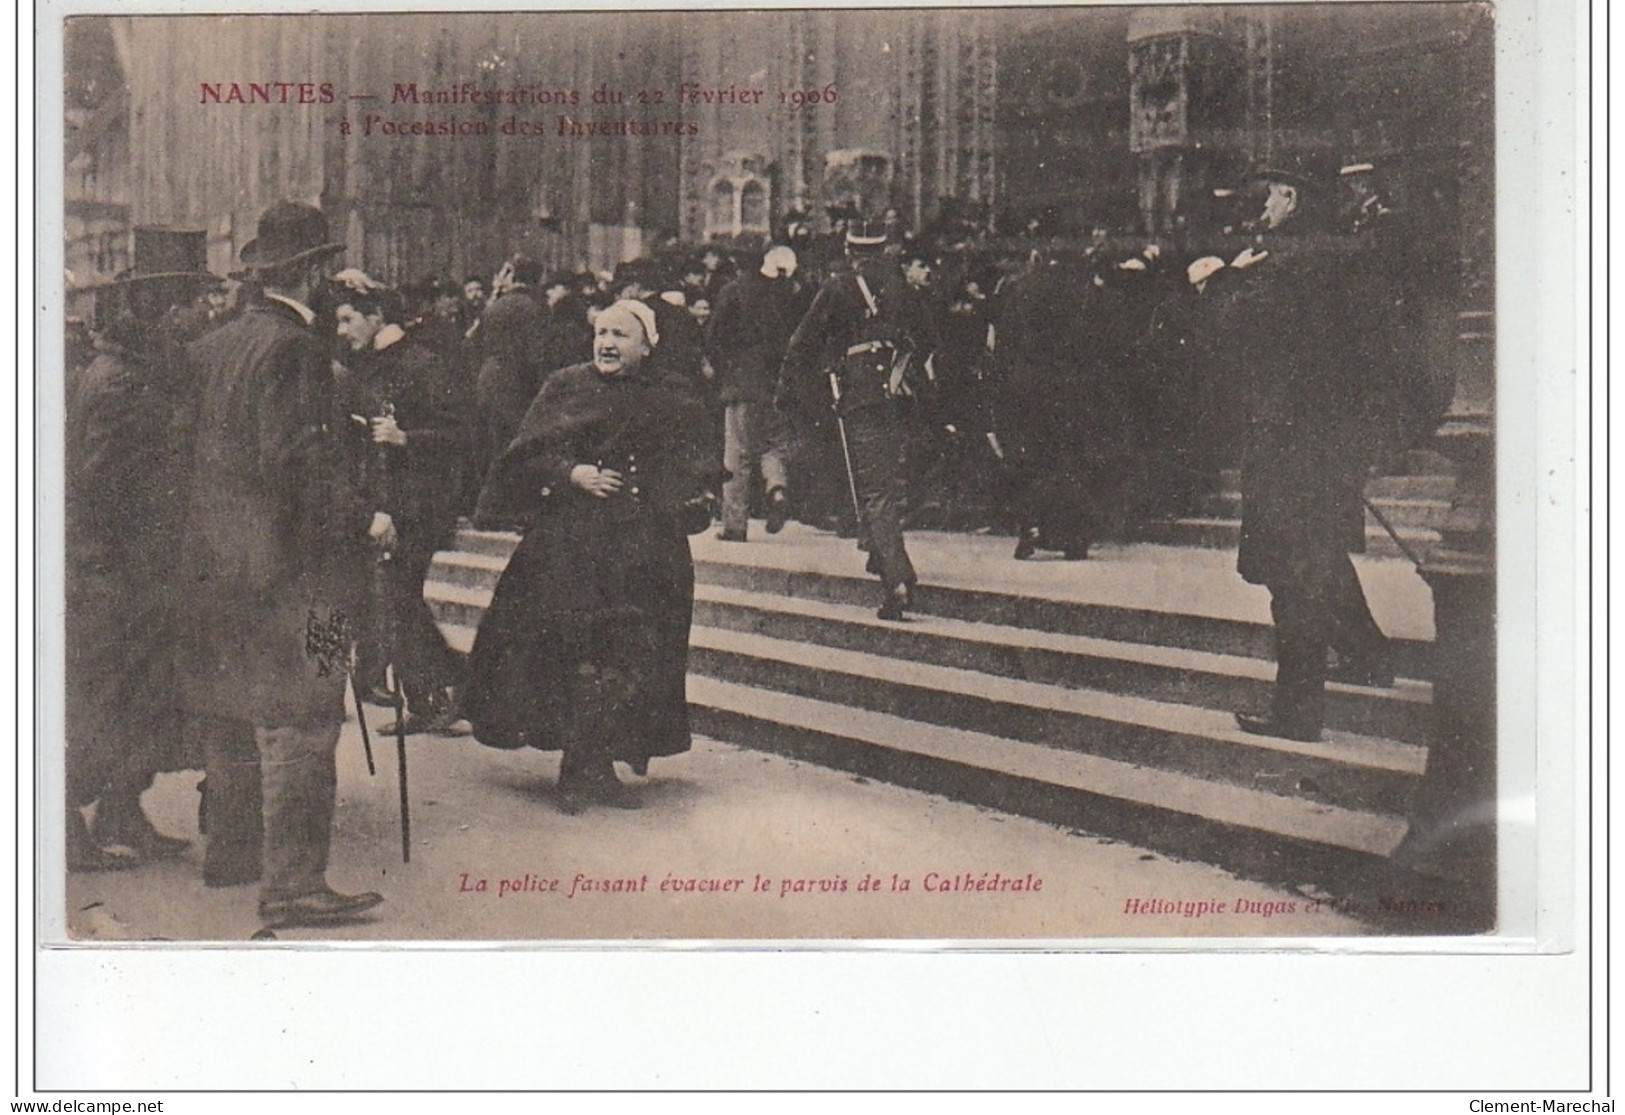 NANTES - Manifestation Du 22 Février 1906 à L'occasion Des Inventaires - Evacuation De La Cathédrale - Très Bon état - Nantes